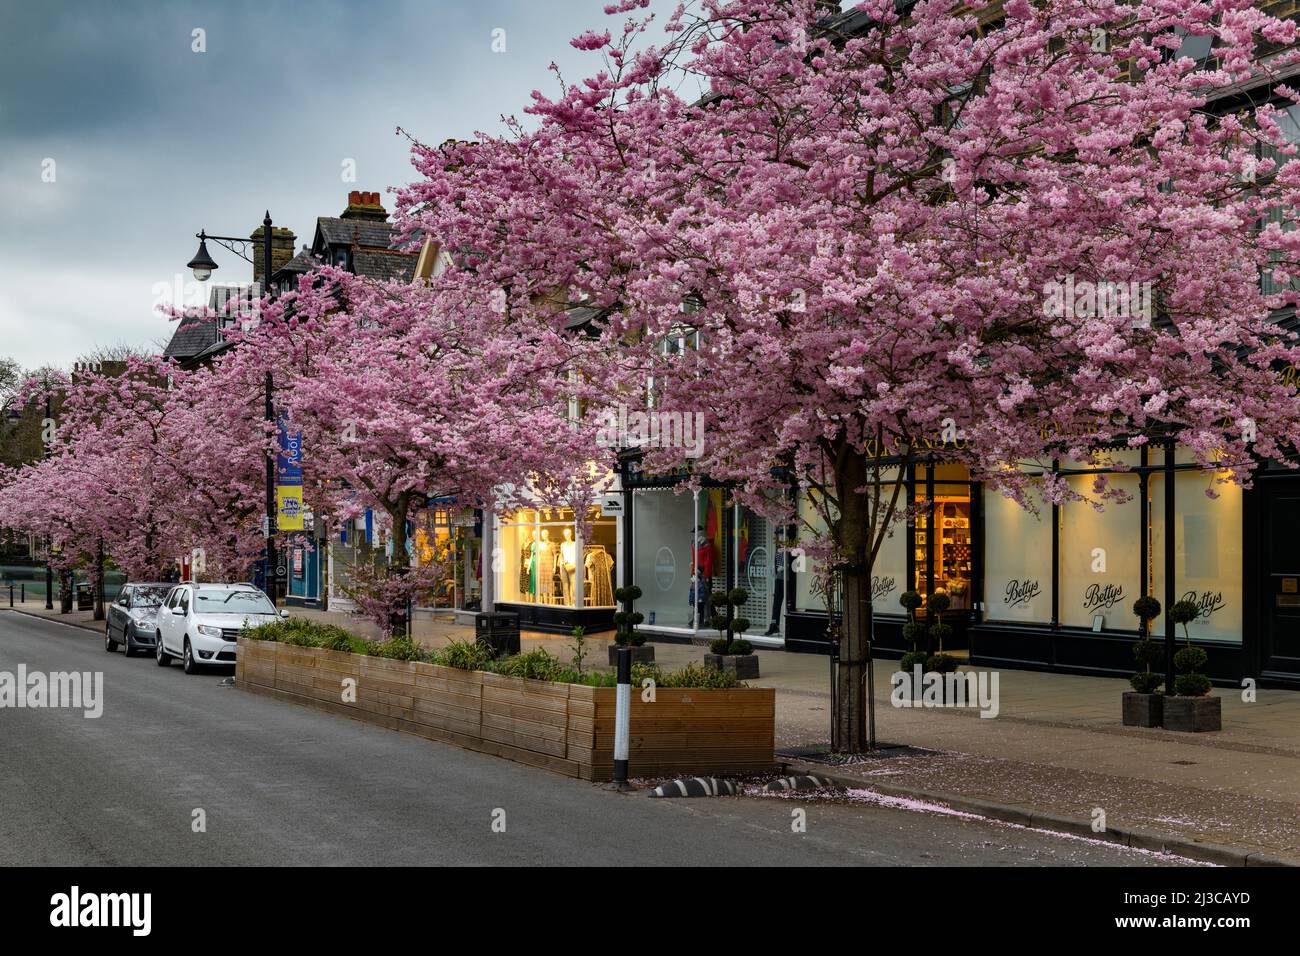 Centre-ville pittoresque de printemps (magnifiques cerisiers colorés en fleurs, restaurant-café shopping, soirée) - The Grove, Ilkley, Yorkshire, Angleterre, Royaume-Uni. Banque D'Images